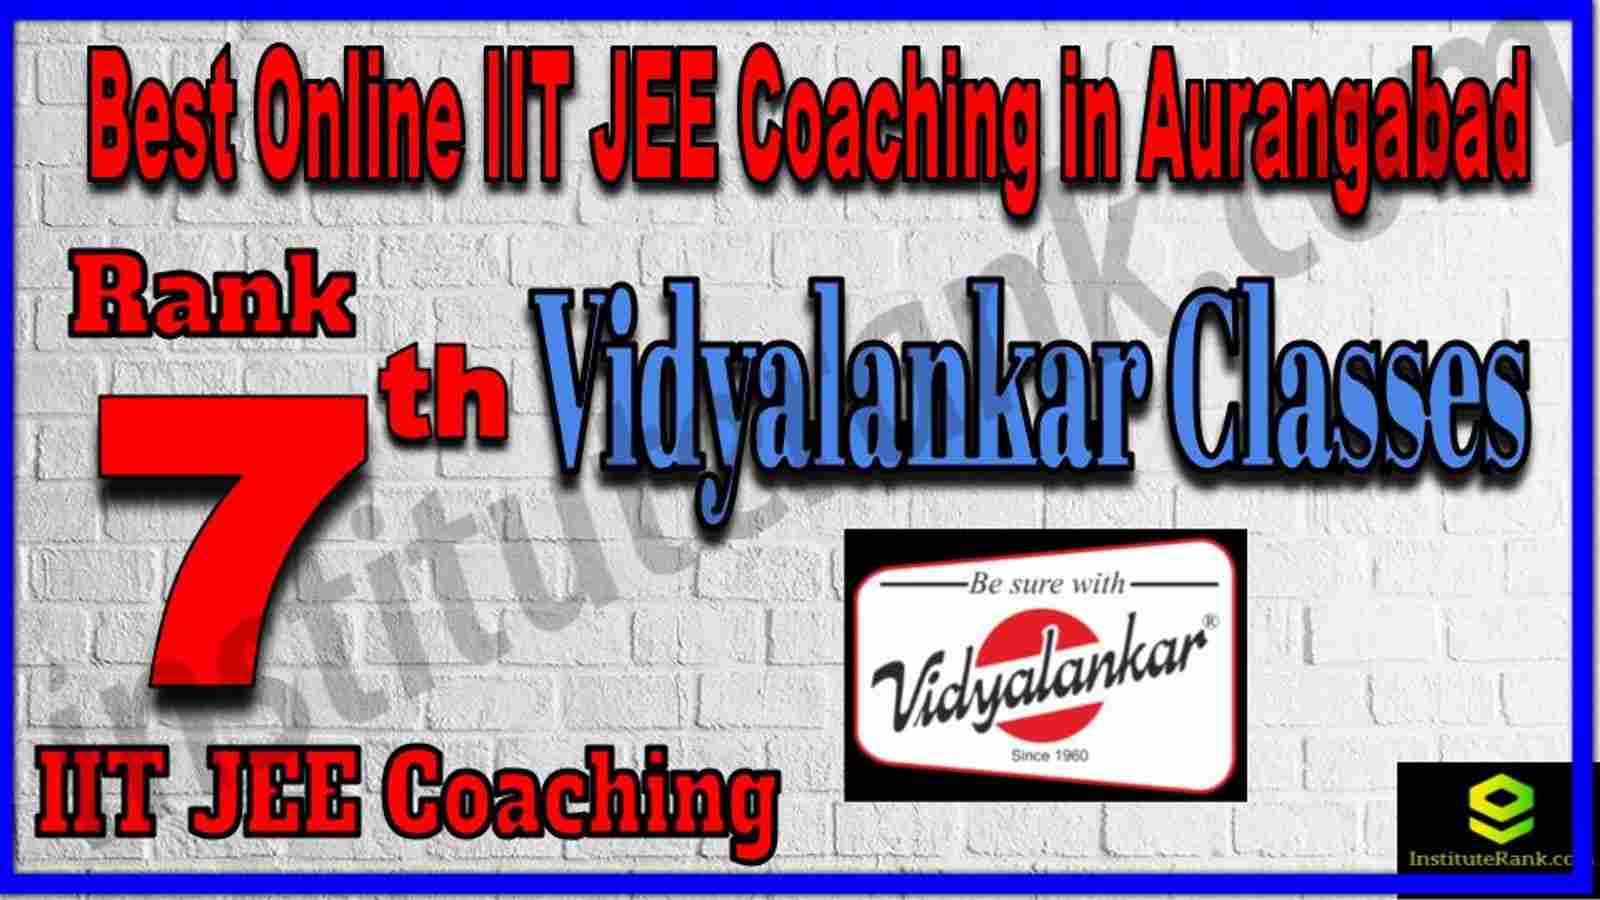 Rank 7th Best Online IIT JEE Coaching in Aurangabad